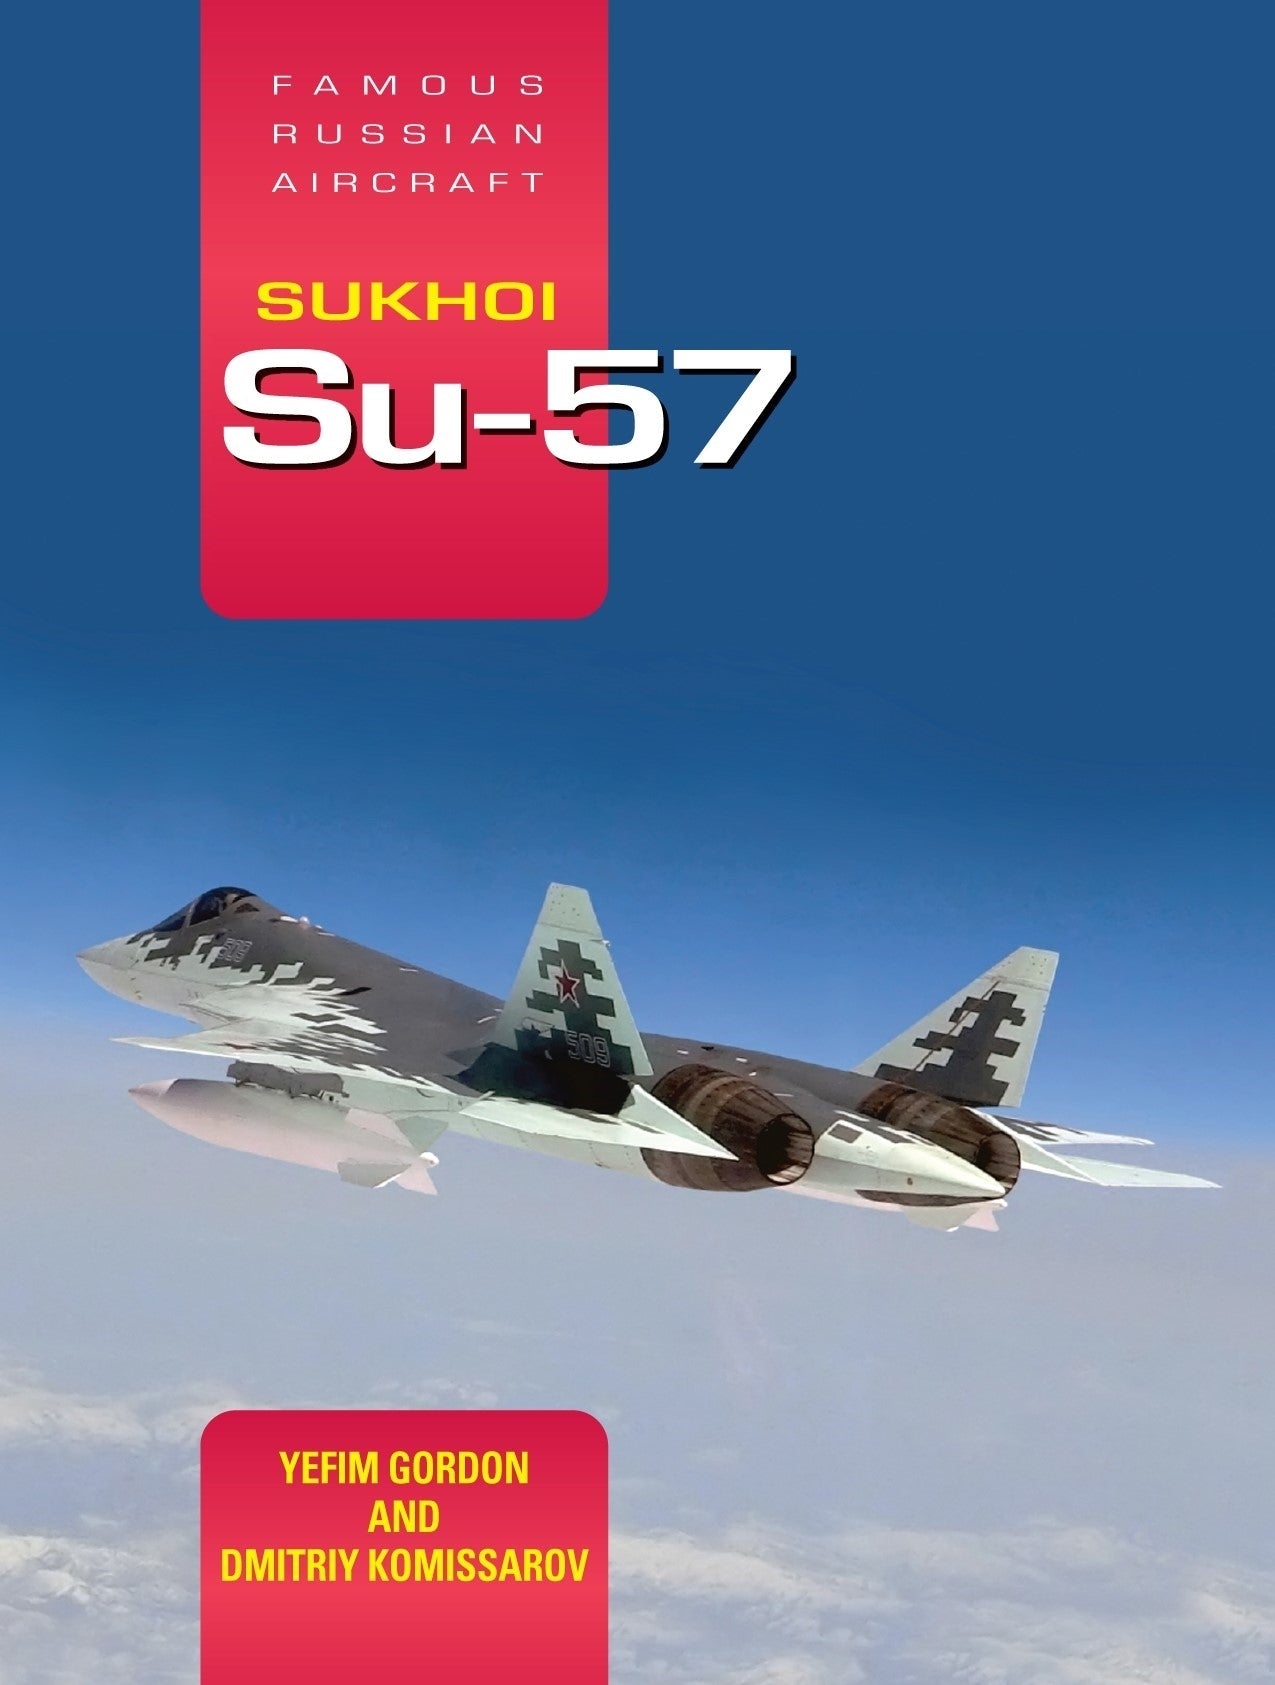 Famous Russian Aircraft: Sukhoi Su-57